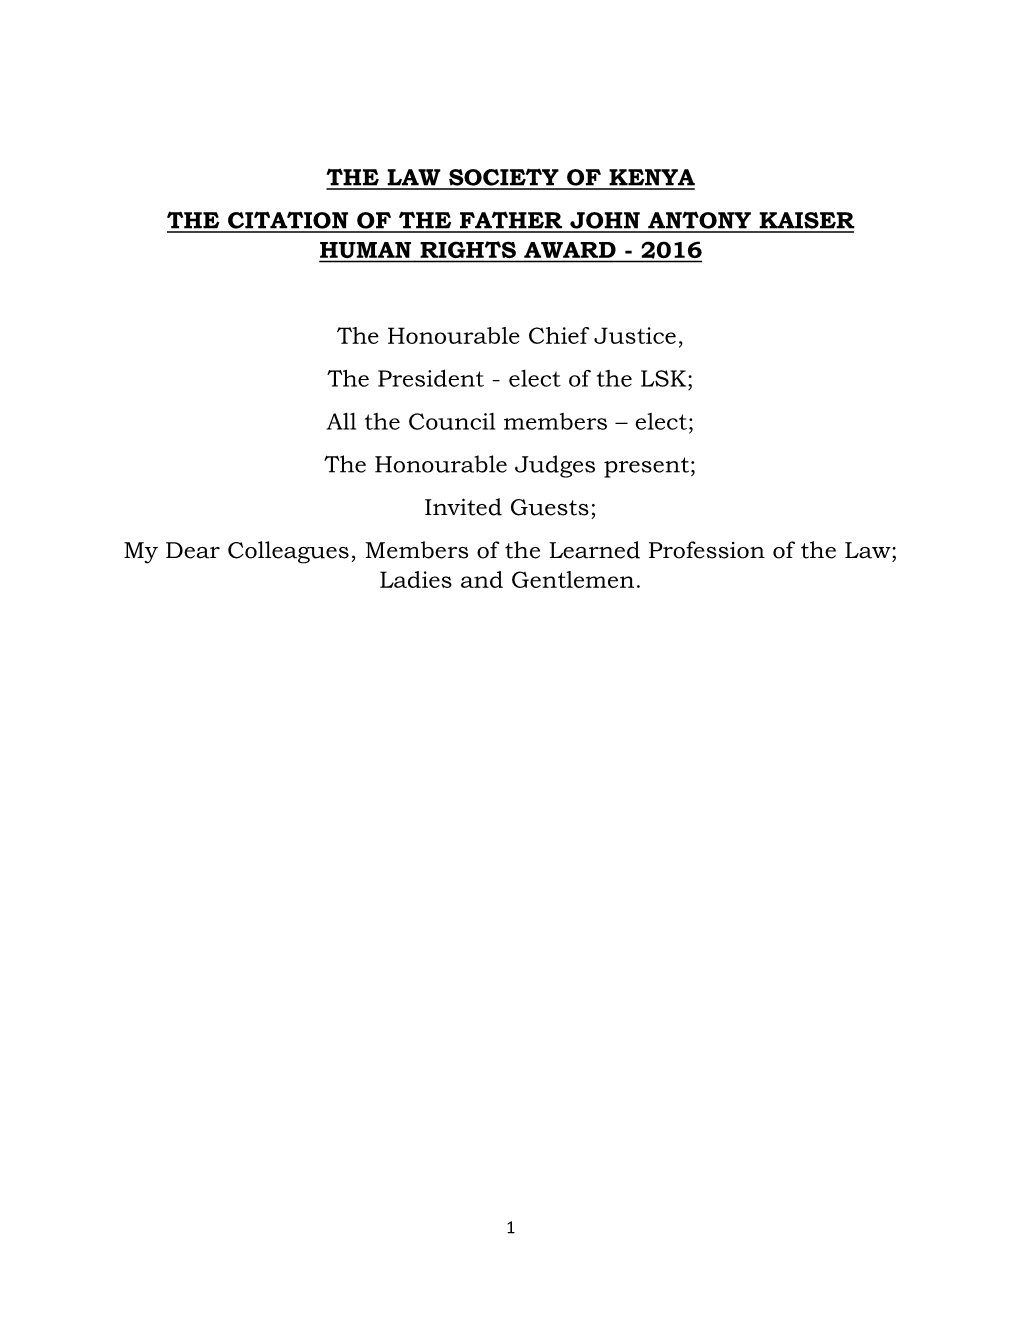 The Law Society of Kenya the Citation of the Father John Antony Kaiser Human Rights Award - 2016